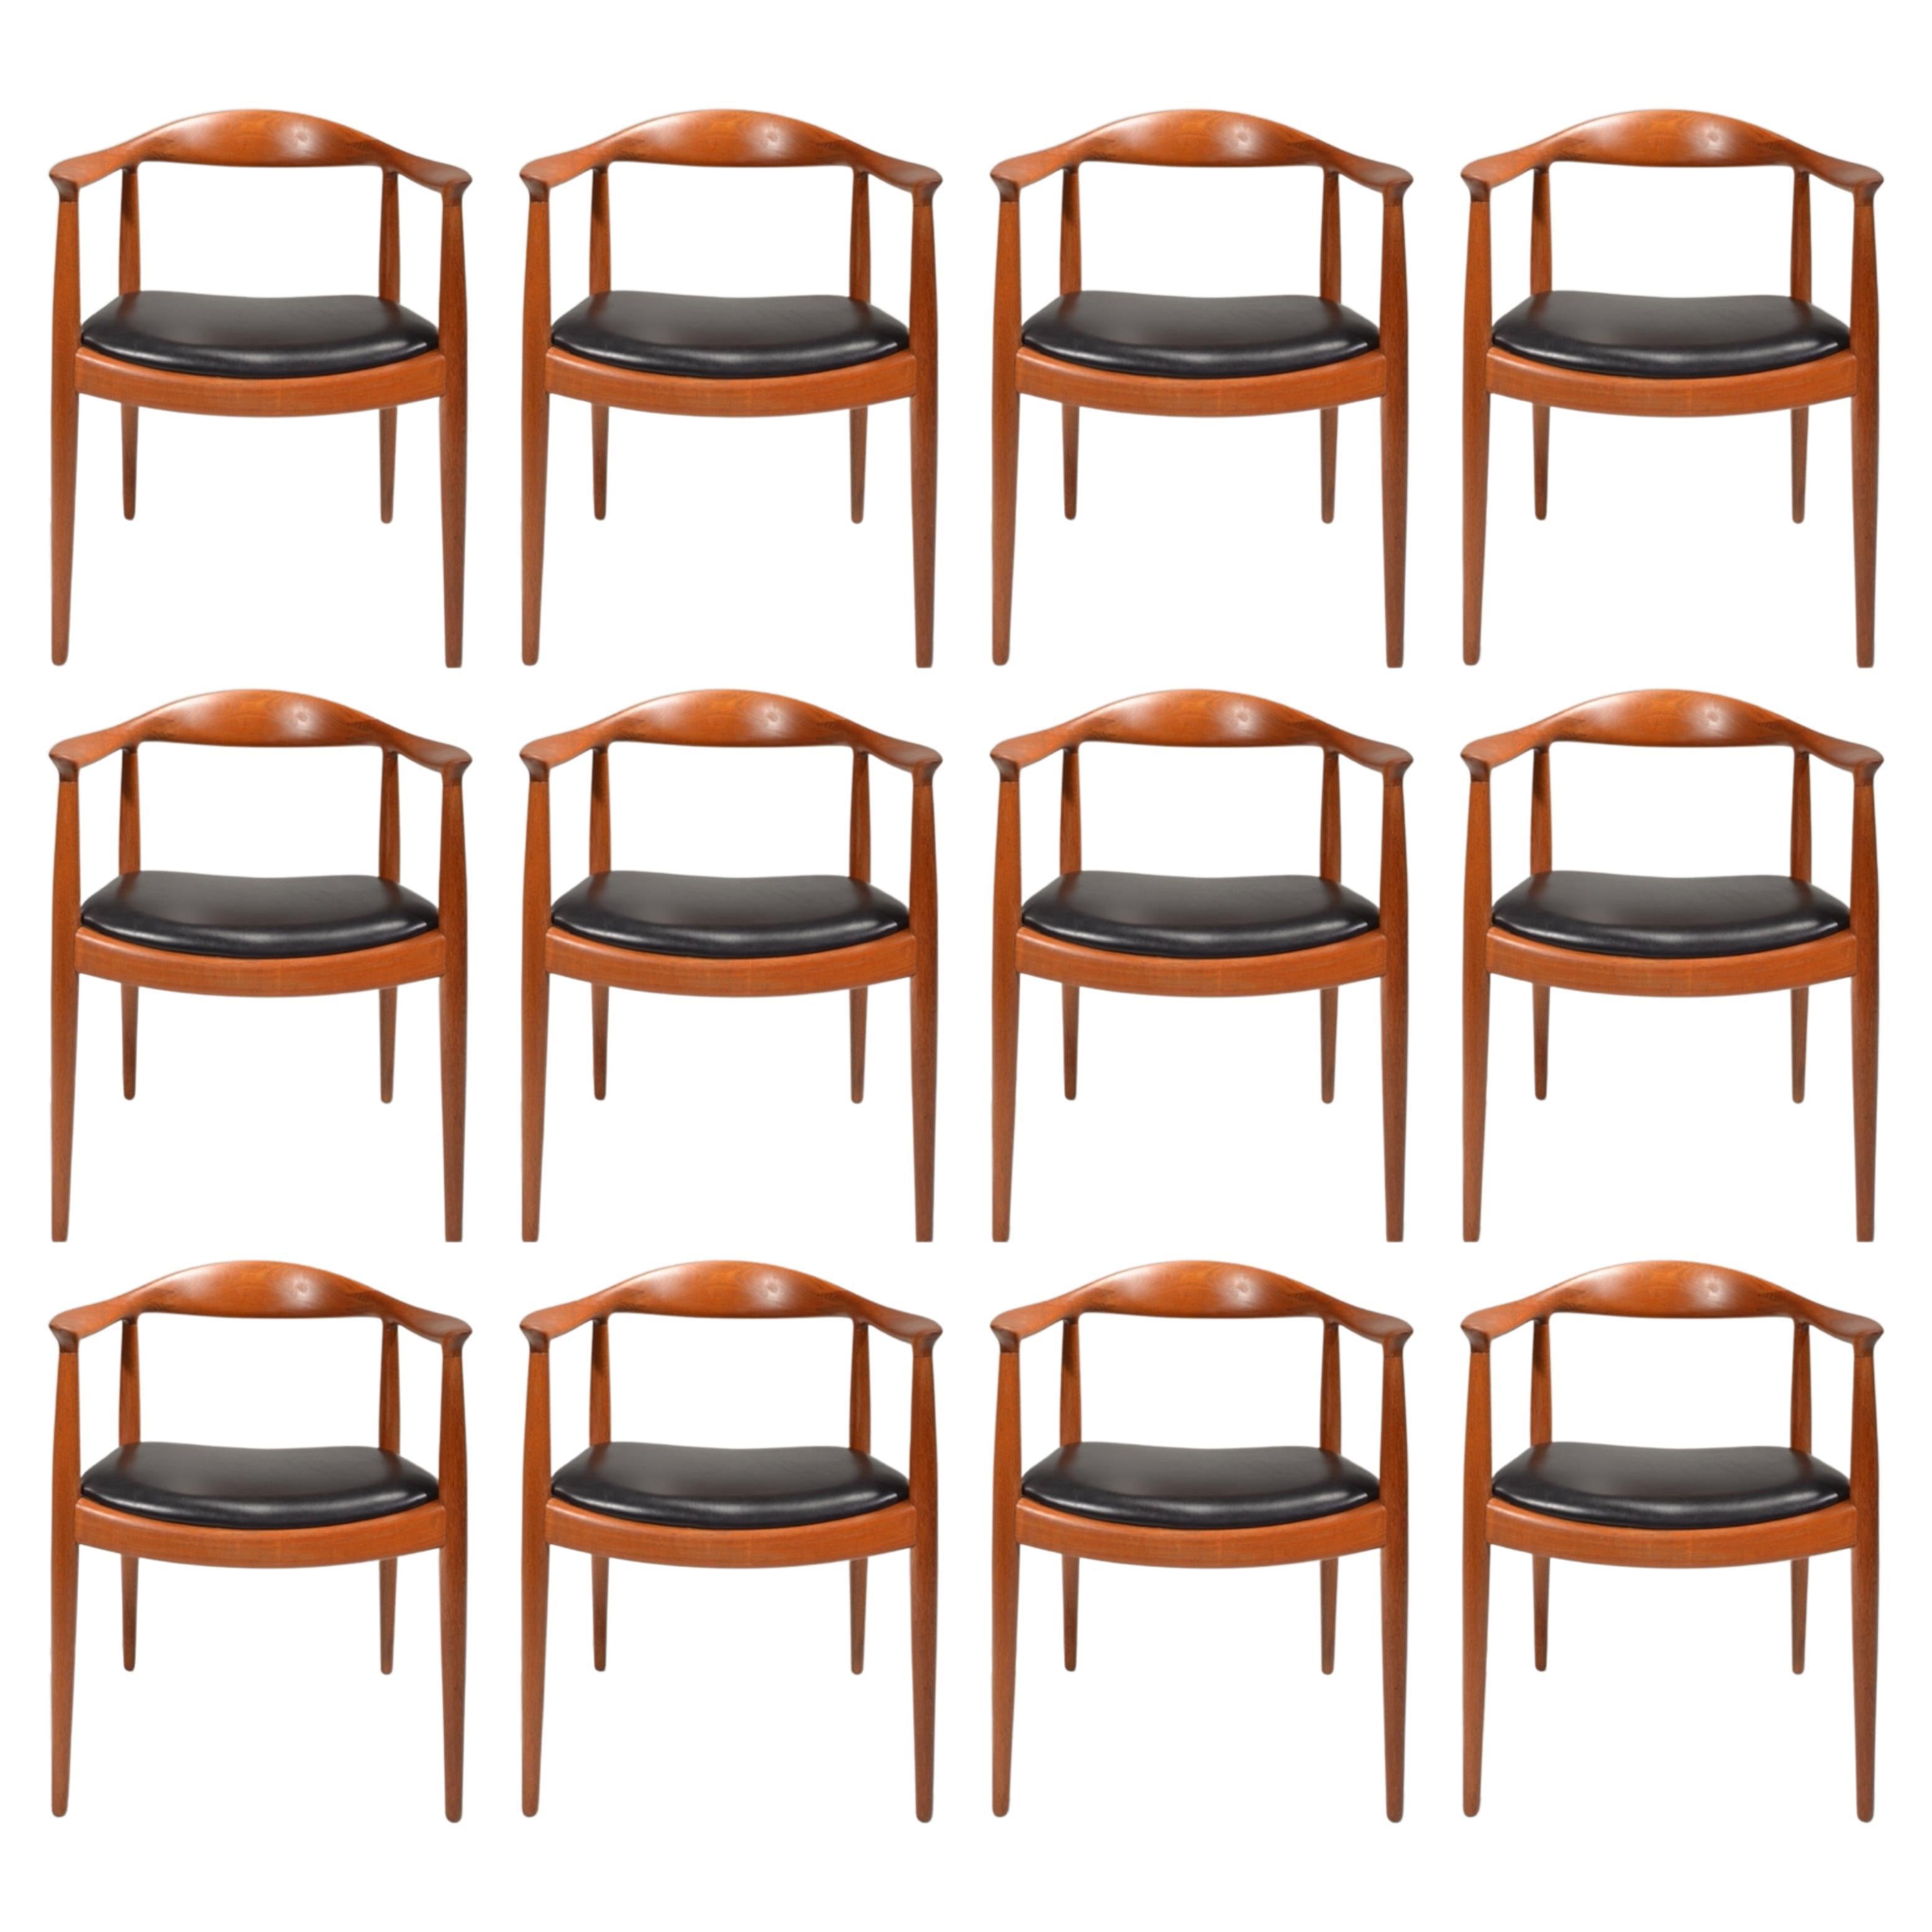 Nous sommes heureux de proposer 11 chaises Hans Wegner JH-503 conçues en 1949 et produites par Johannes Hansen. Construction en teck massif ancien entièrement restaurée. Estampillé avec la marque du fabricant. Actuellement, nous en avons 4 en cuir